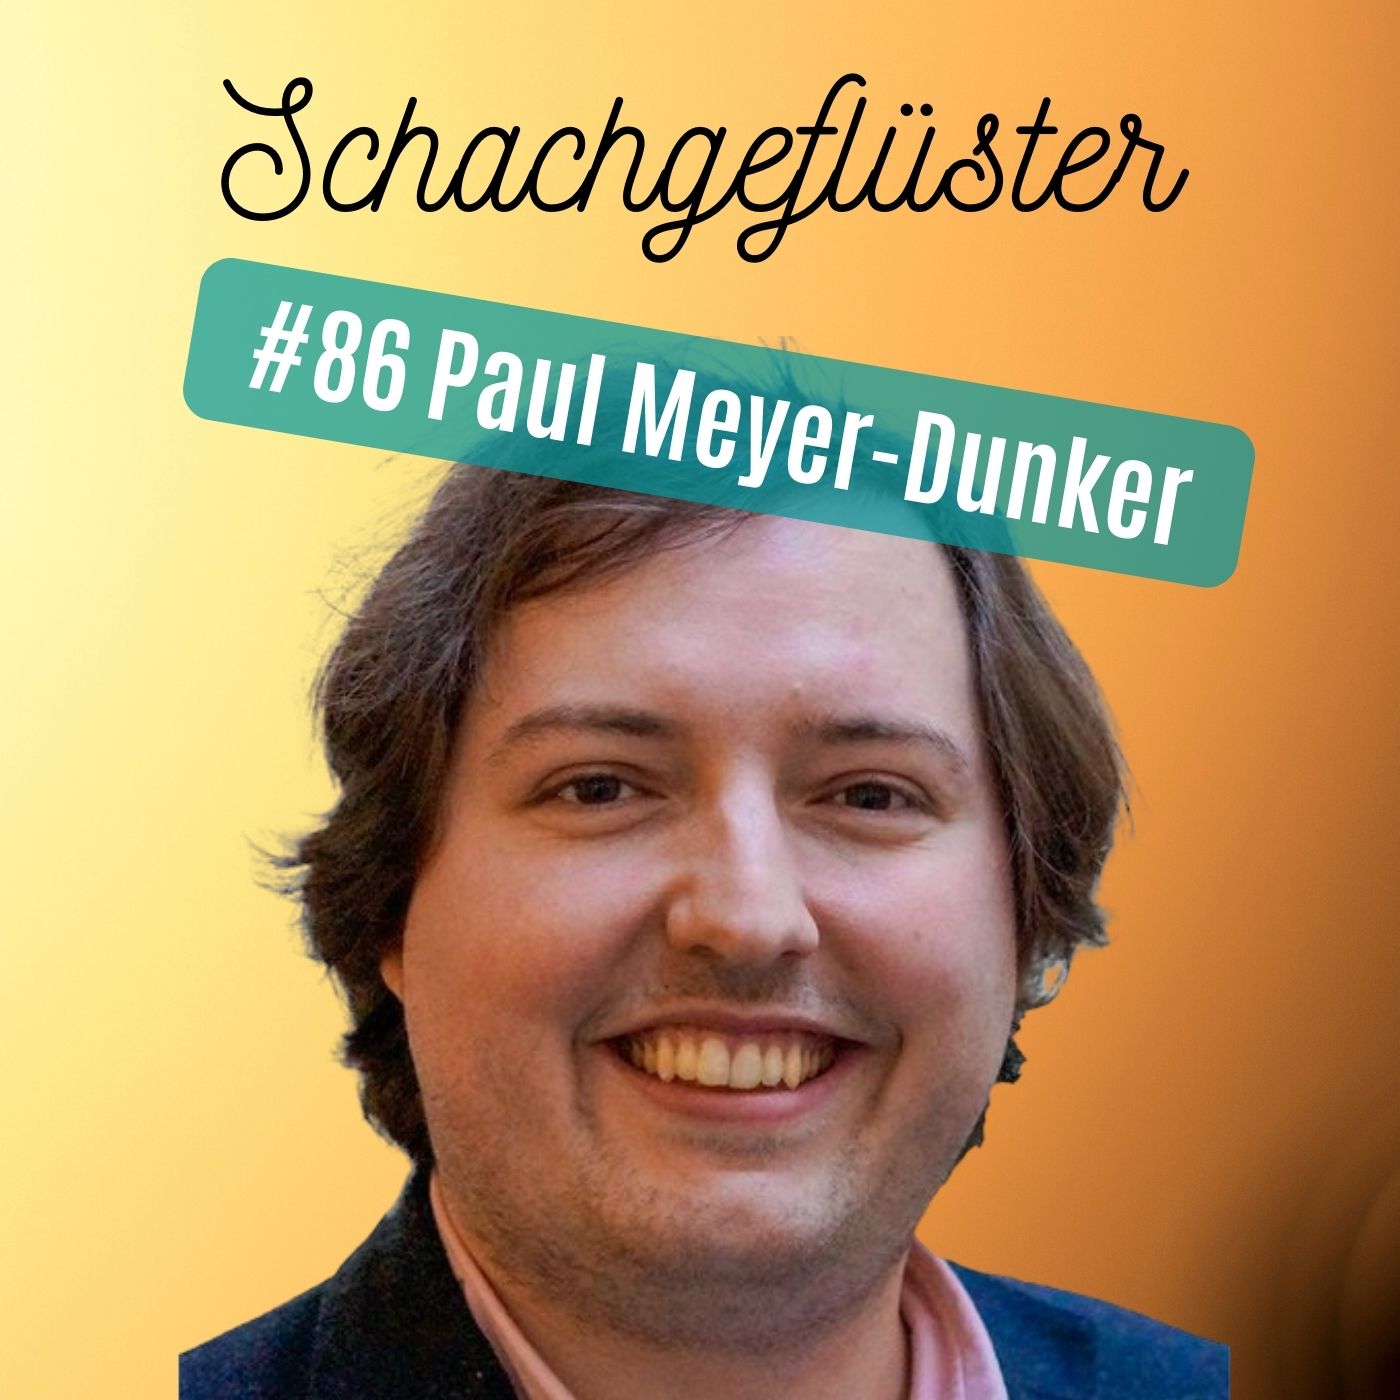 Paul Meyer-Dunker | #86